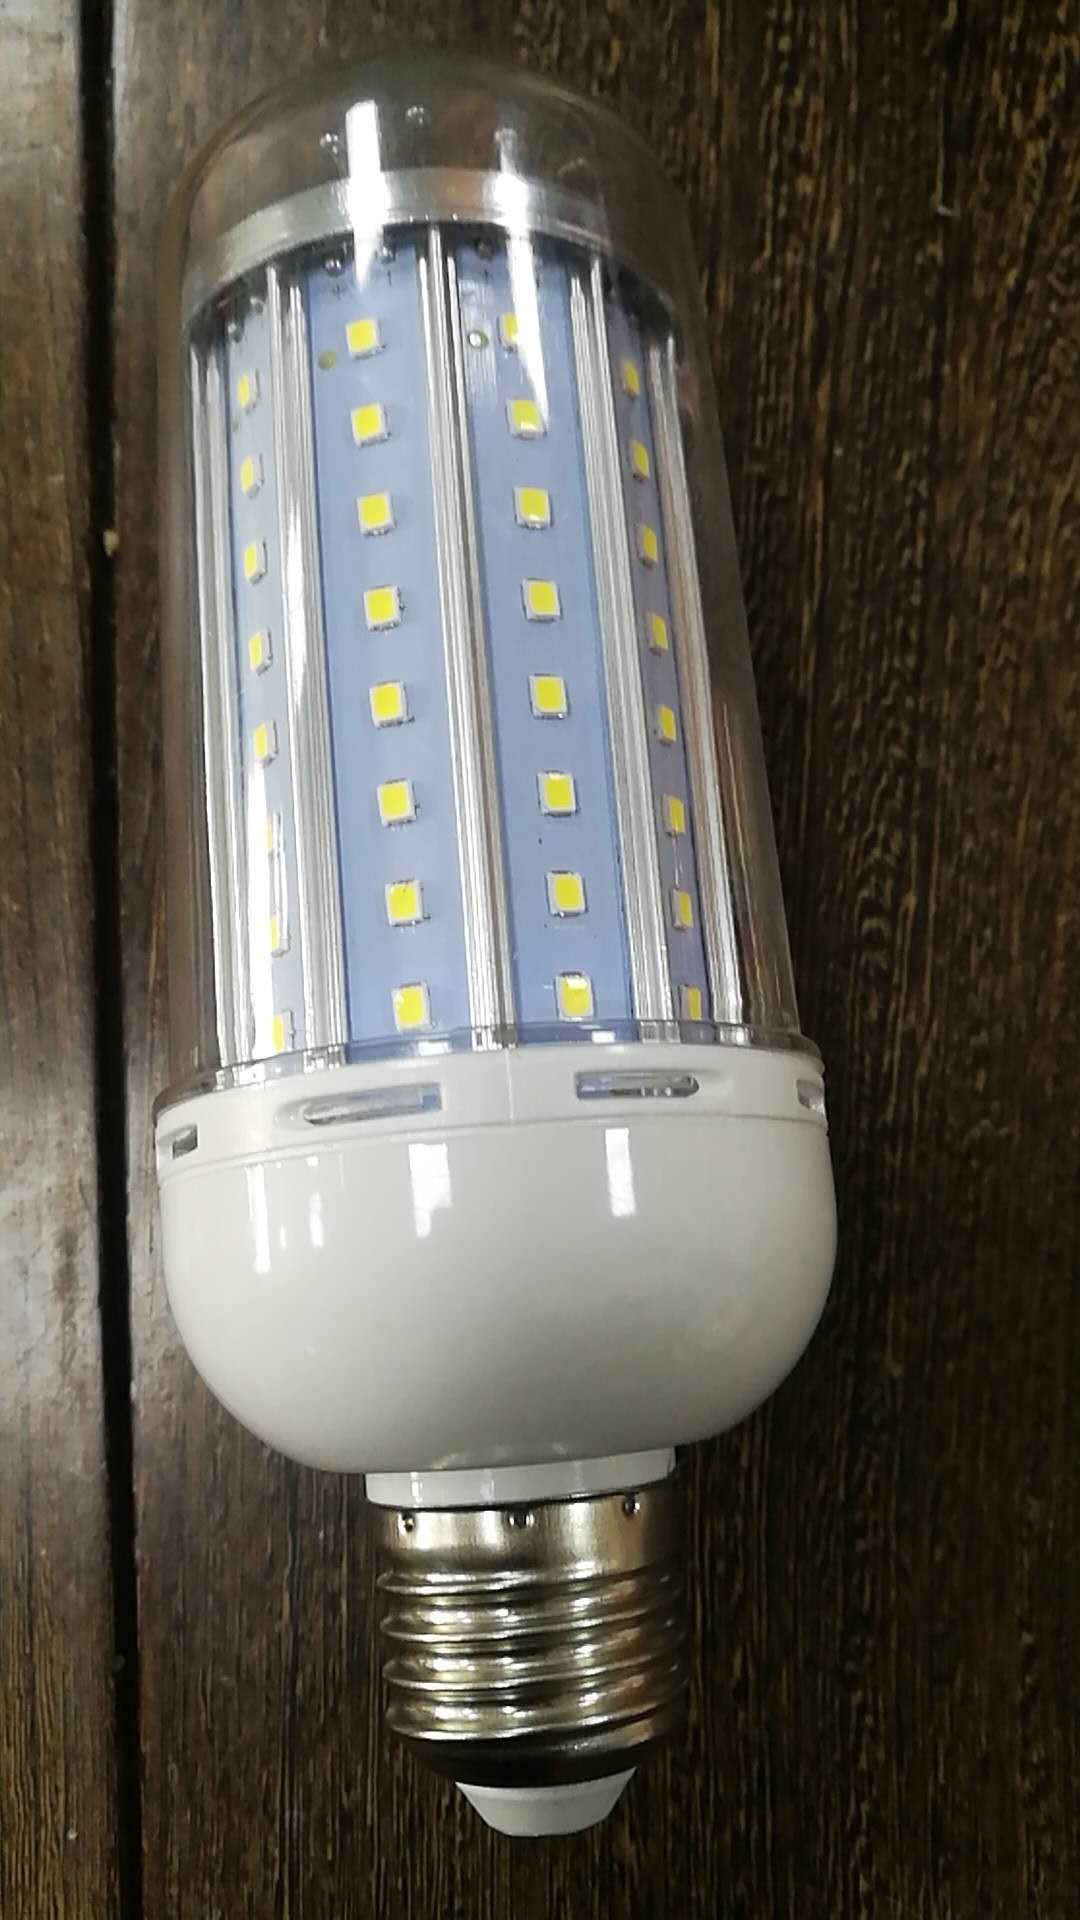 LED太阳能路灯 LEDSCOB集成光源路灯   LED铝合金防尘玉米灯图片